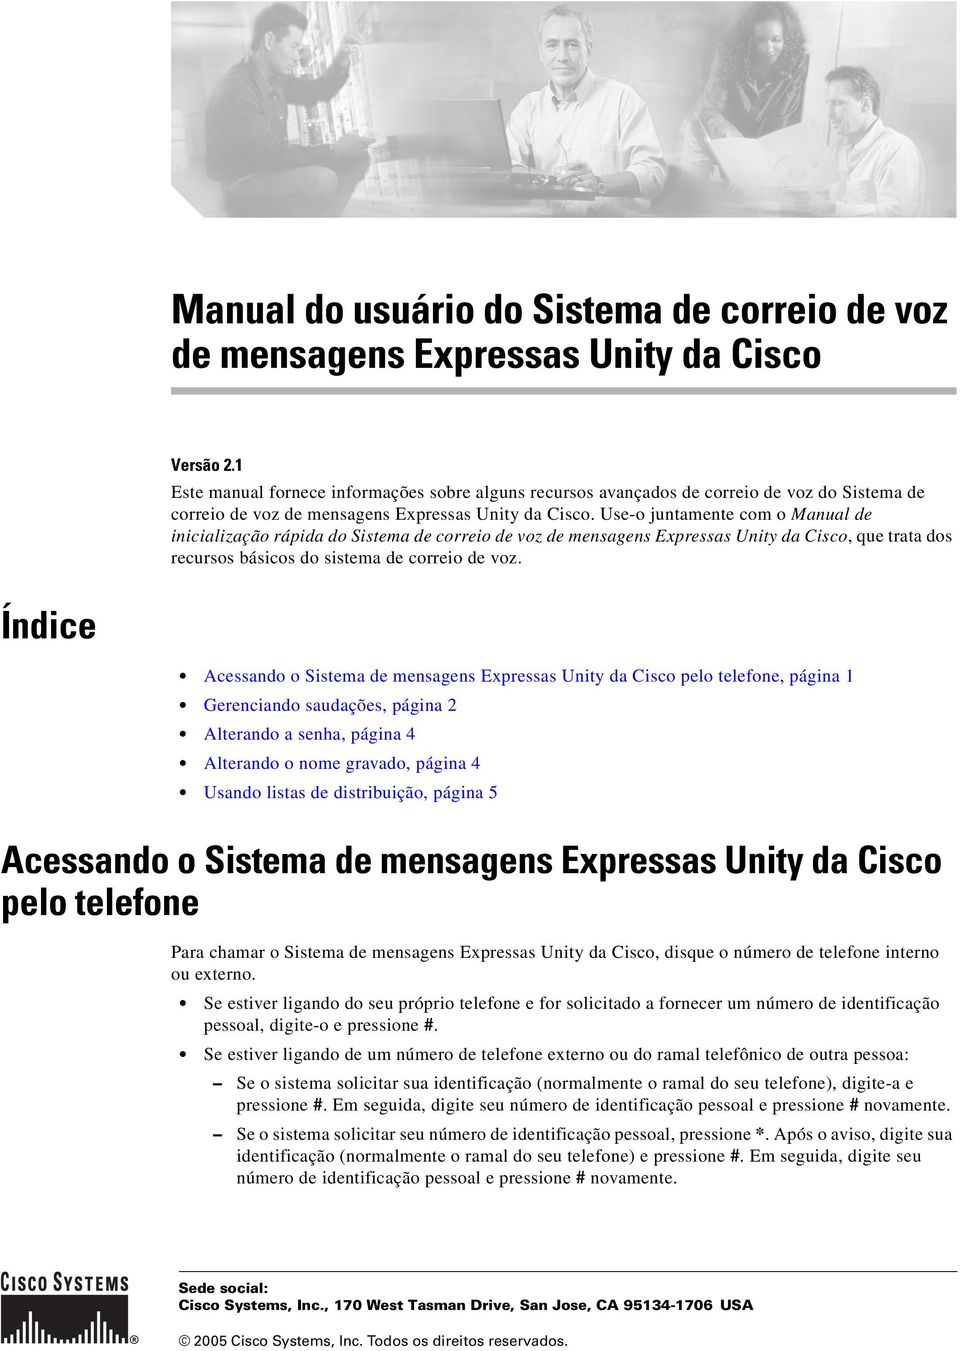 Use-o juntamente com o Manual de inicialização rápida do Sistema de correio de voz de mensagens Expressas Unity da Cisco, que trata dos recursos básicos do sistema de correio de voz.